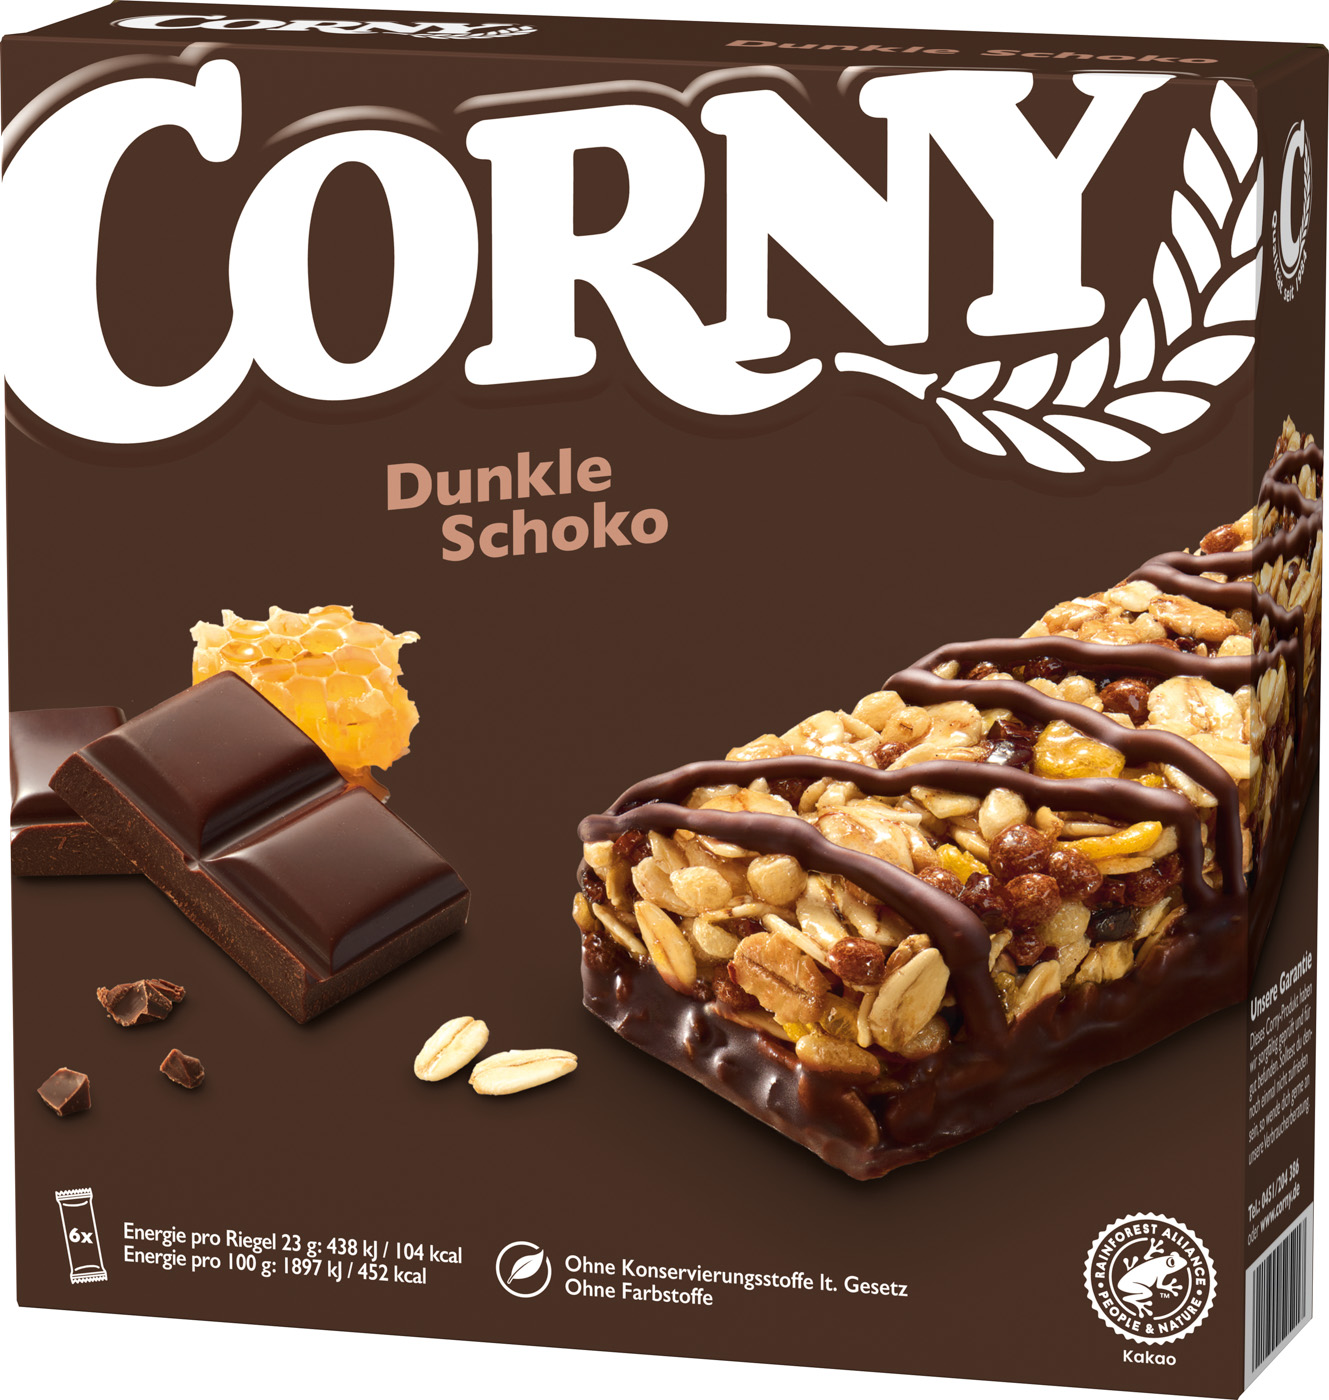 Corny Dunkle Schokoriegel 6 x 28g 138G